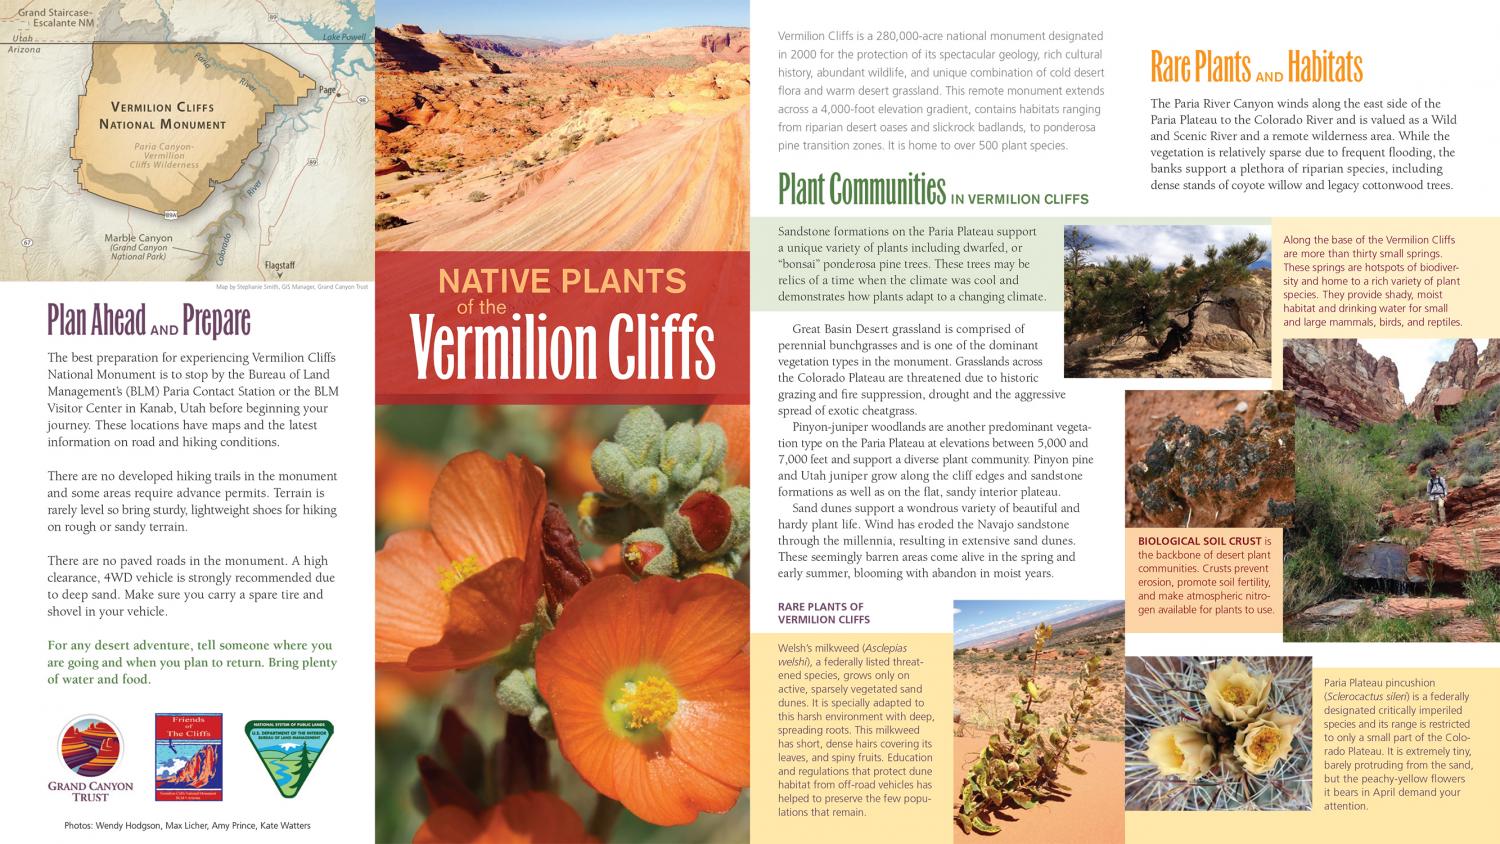 Native plants of the Vermilion Cliffs